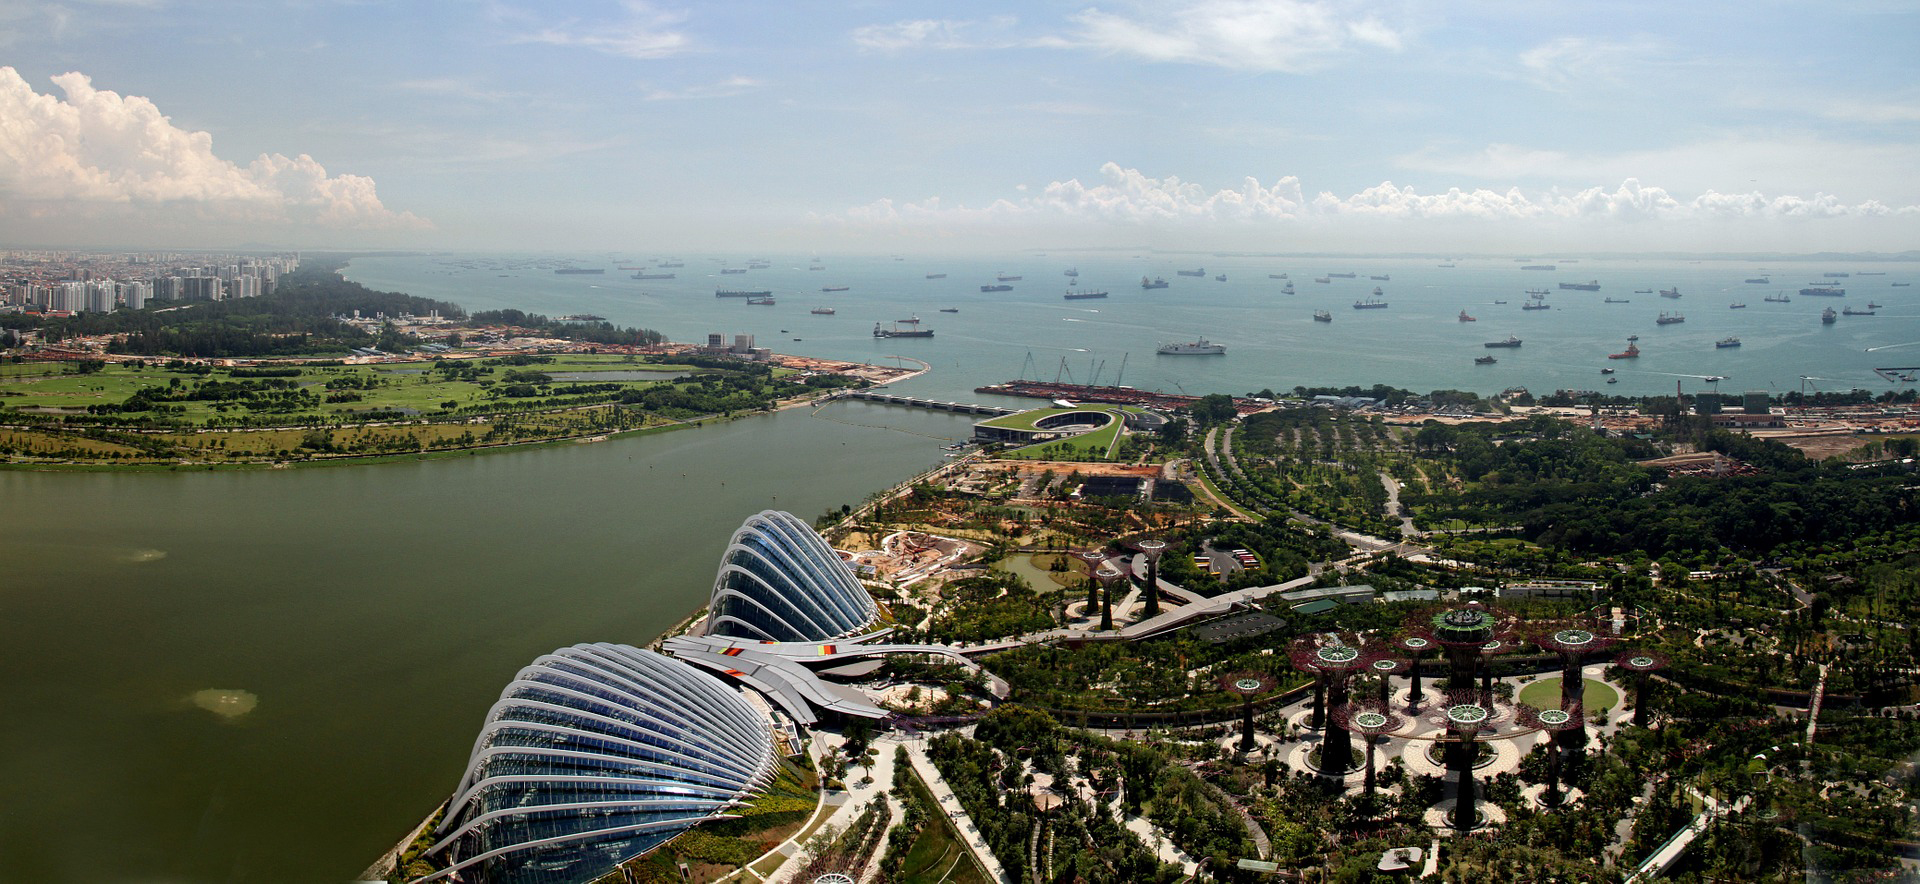 シンガポール、緑の面積で17都市中1位